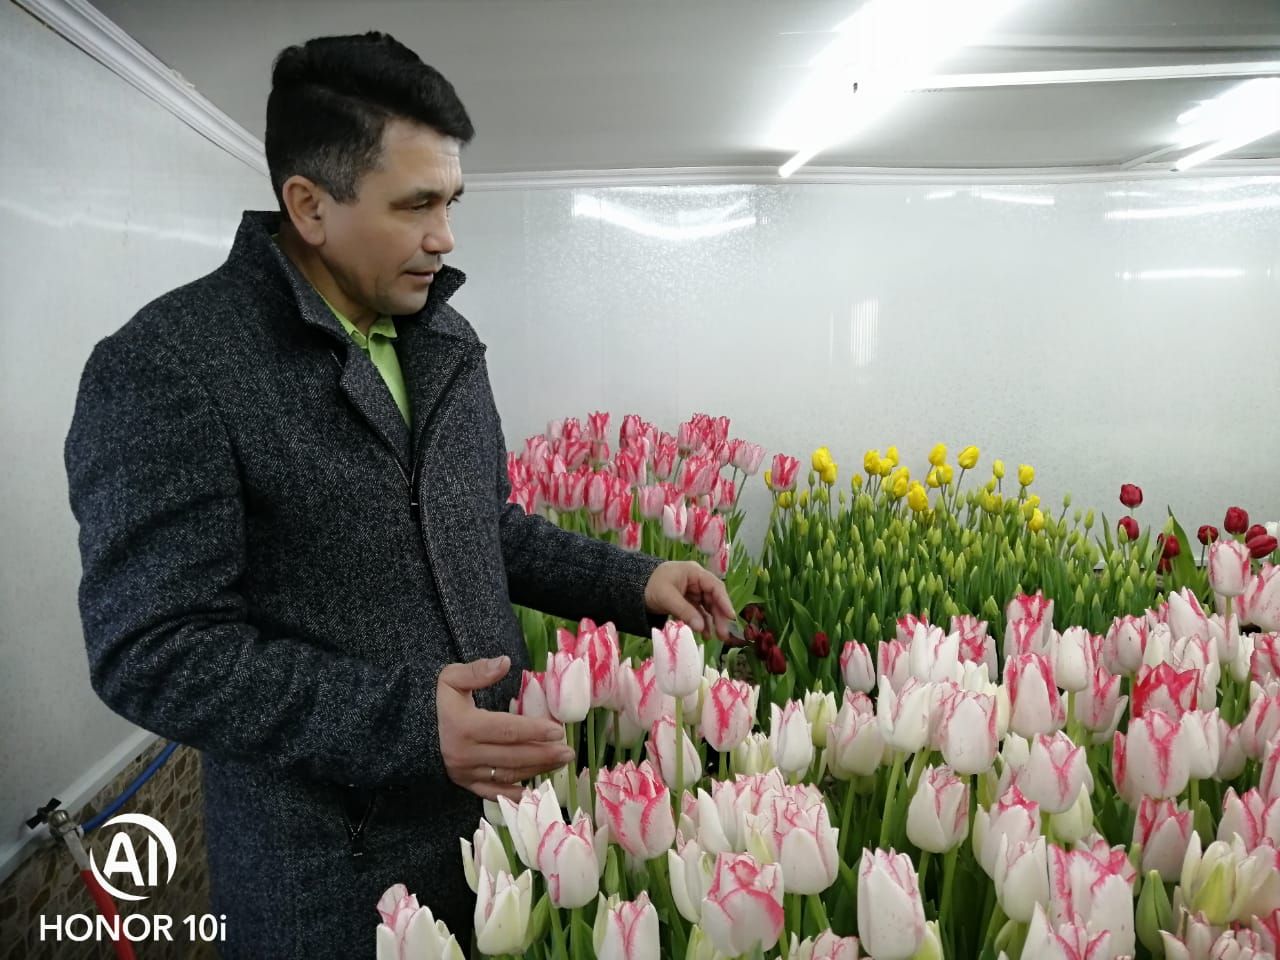 В хозяйстве Заббаровых из Буинского района расцвели 4 тысячи тюльпанов (фоторепортаж)